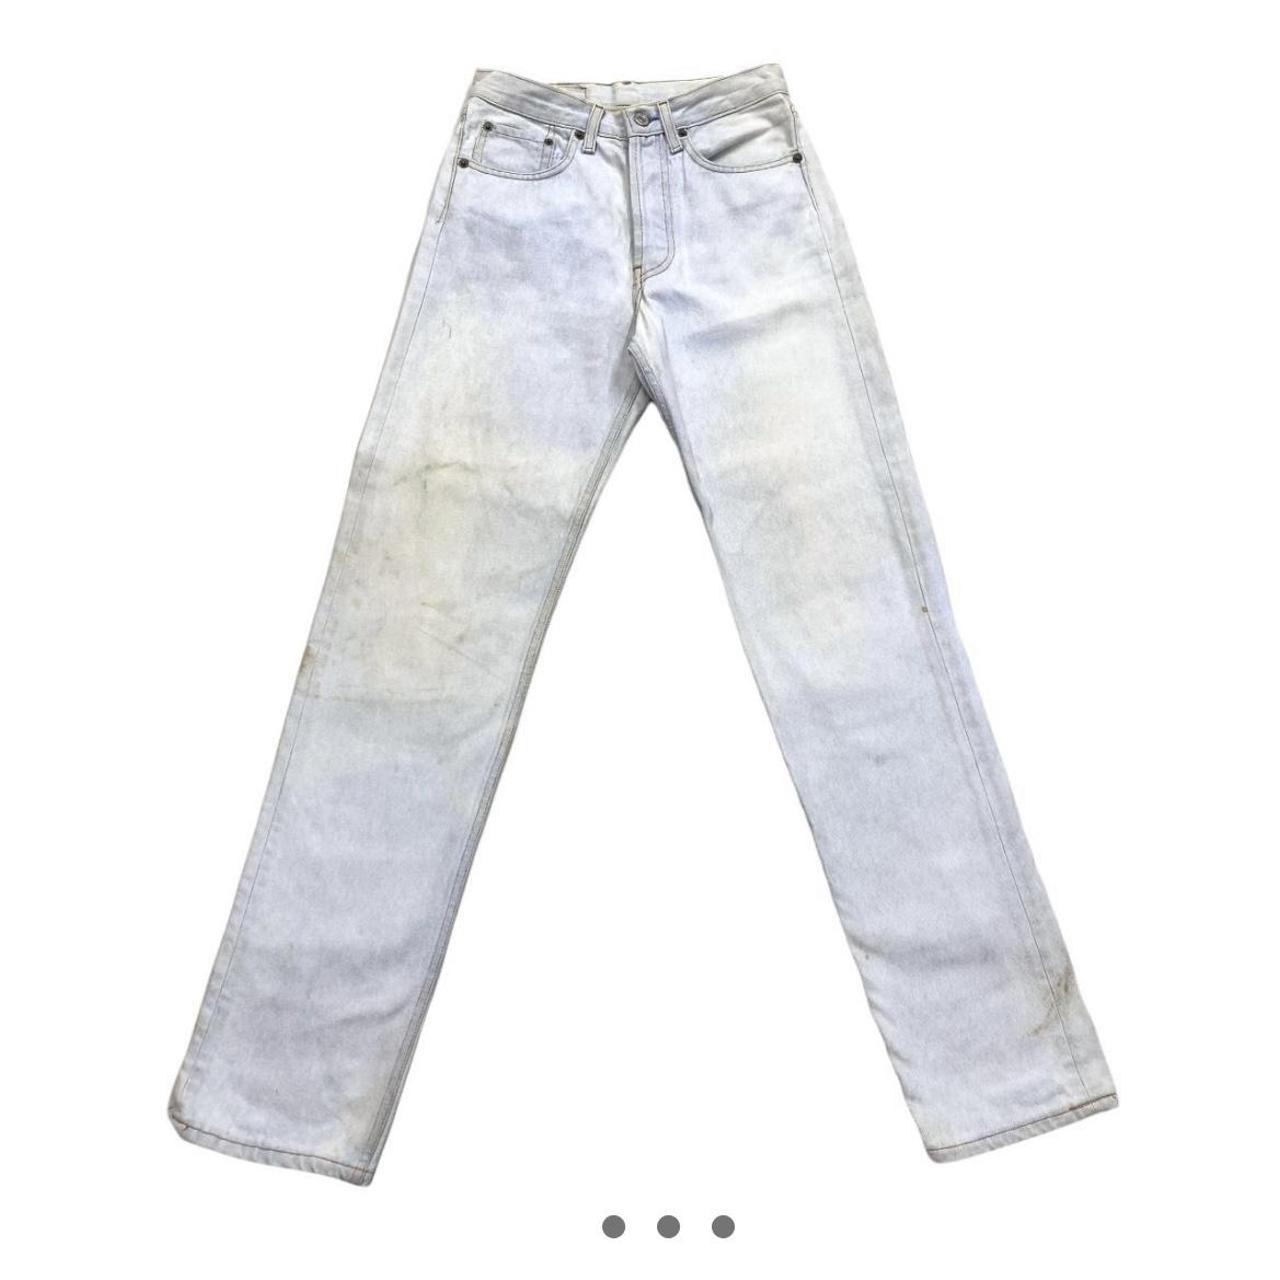 Levi’s 501 Womens Jeans - Vintage 90’s Light Blue... - Depop